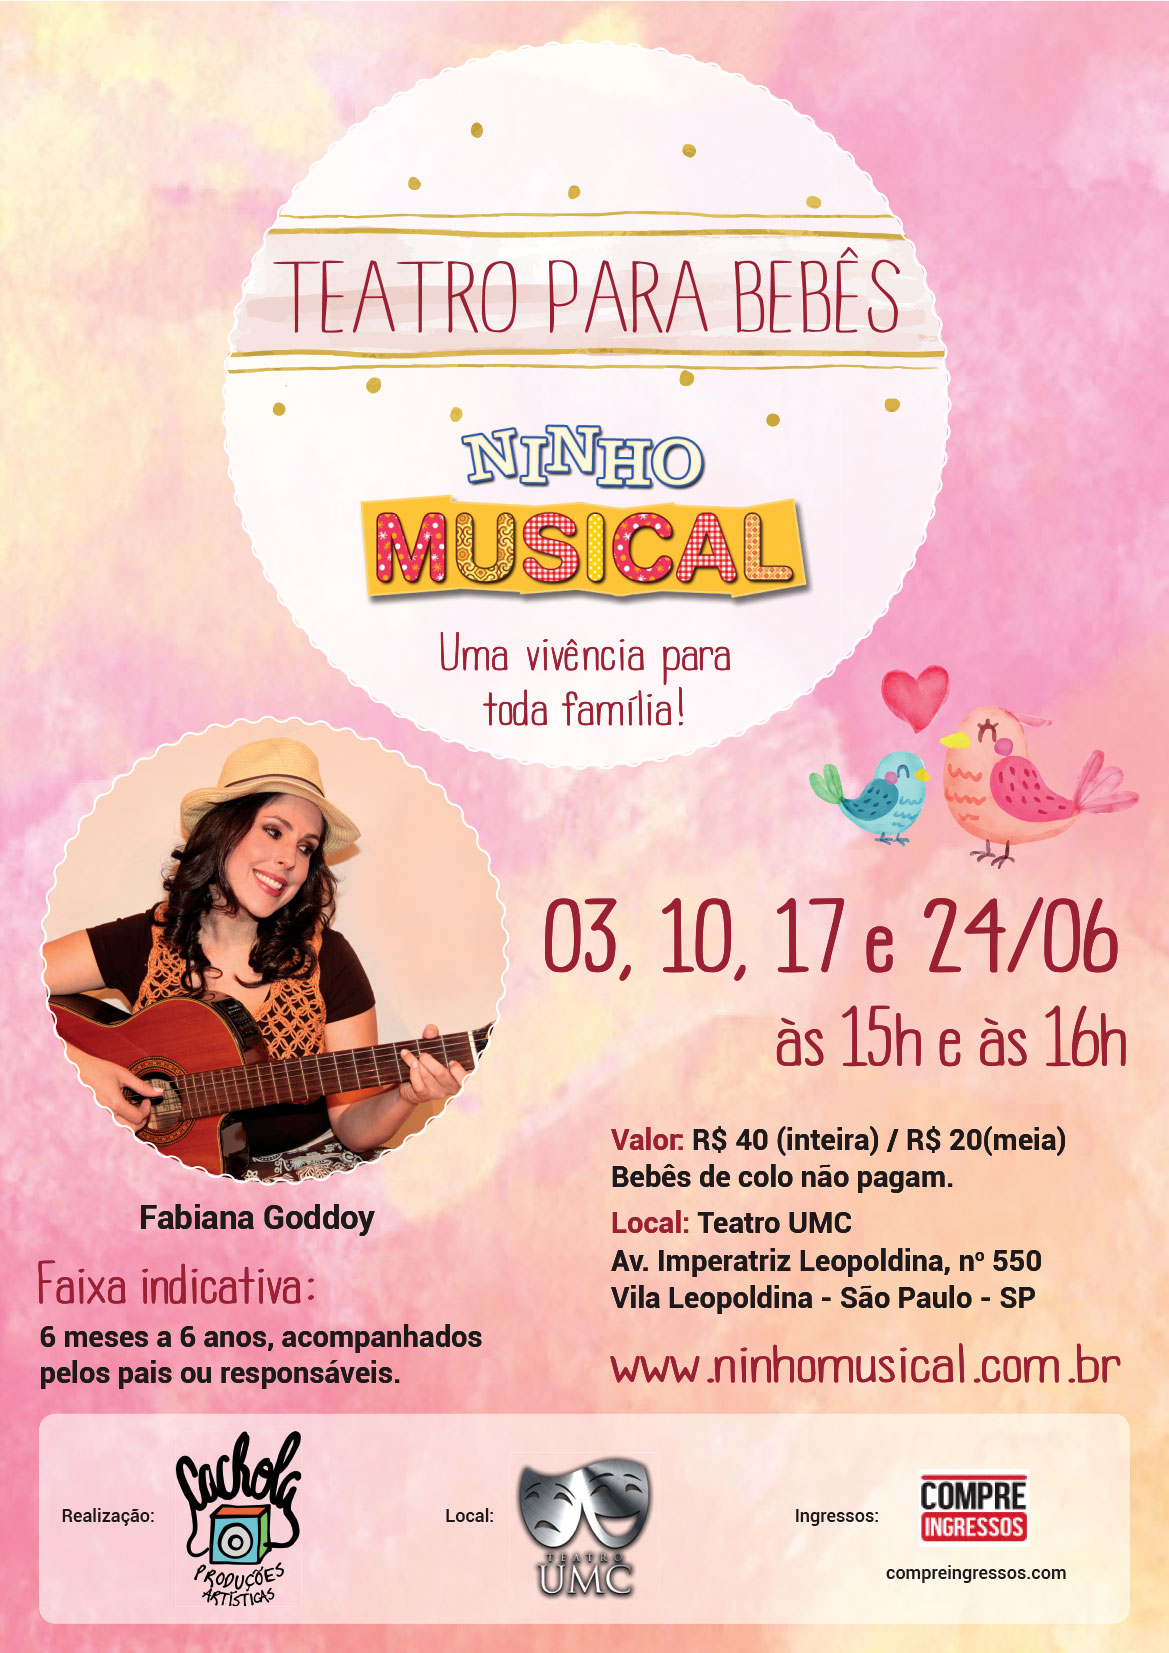 Teatro para bebês “Ninho musical” estreia em São Paulo